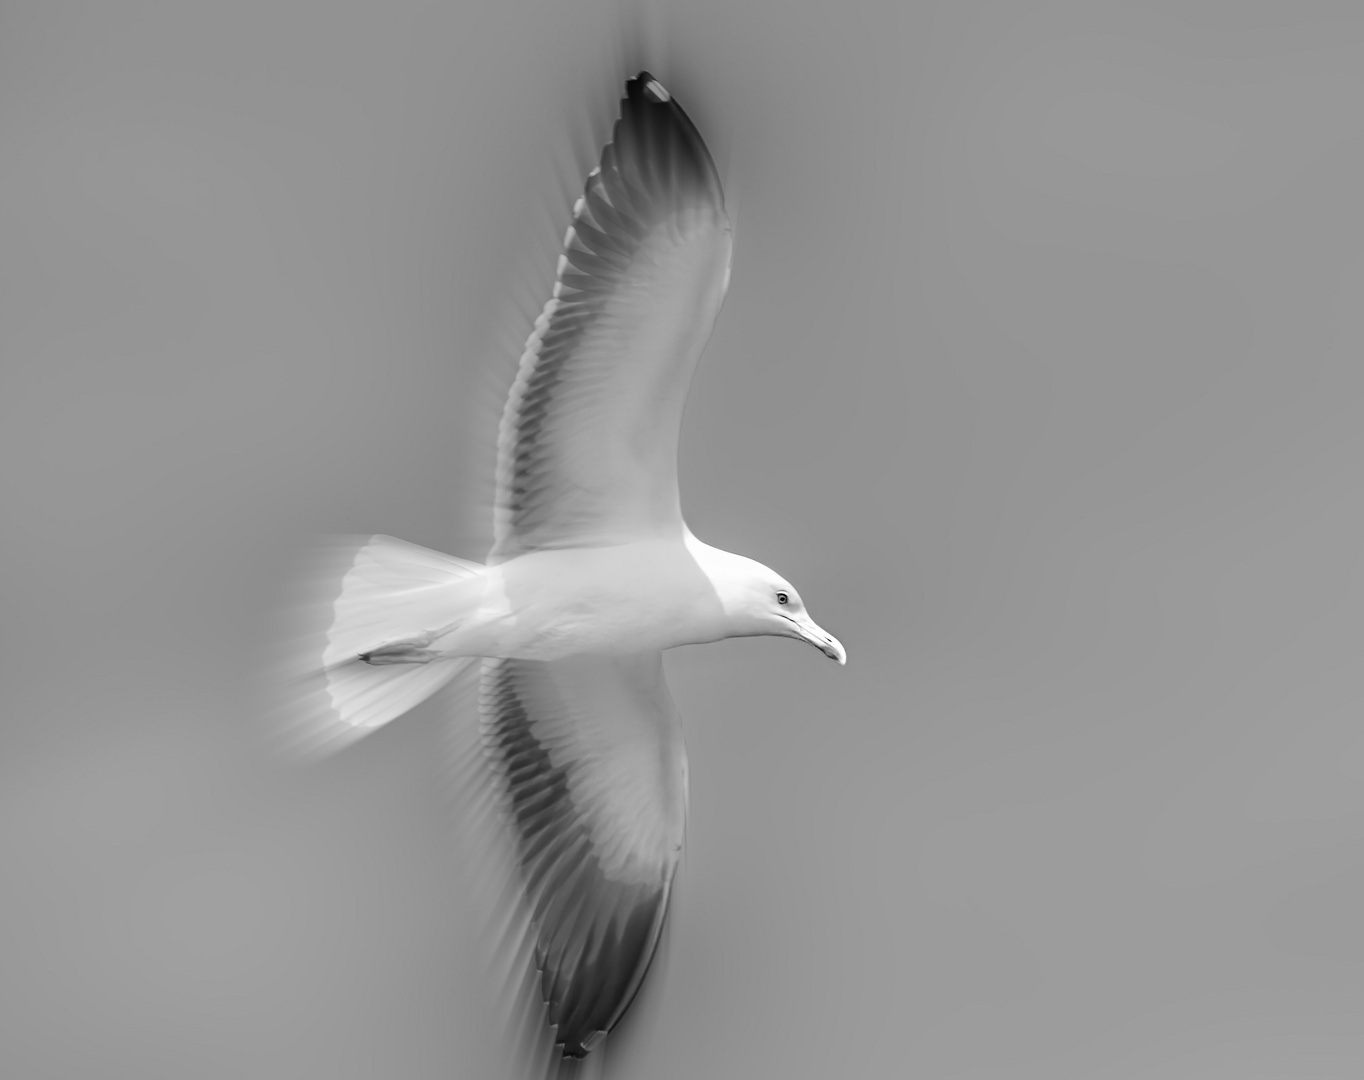 blurred flight